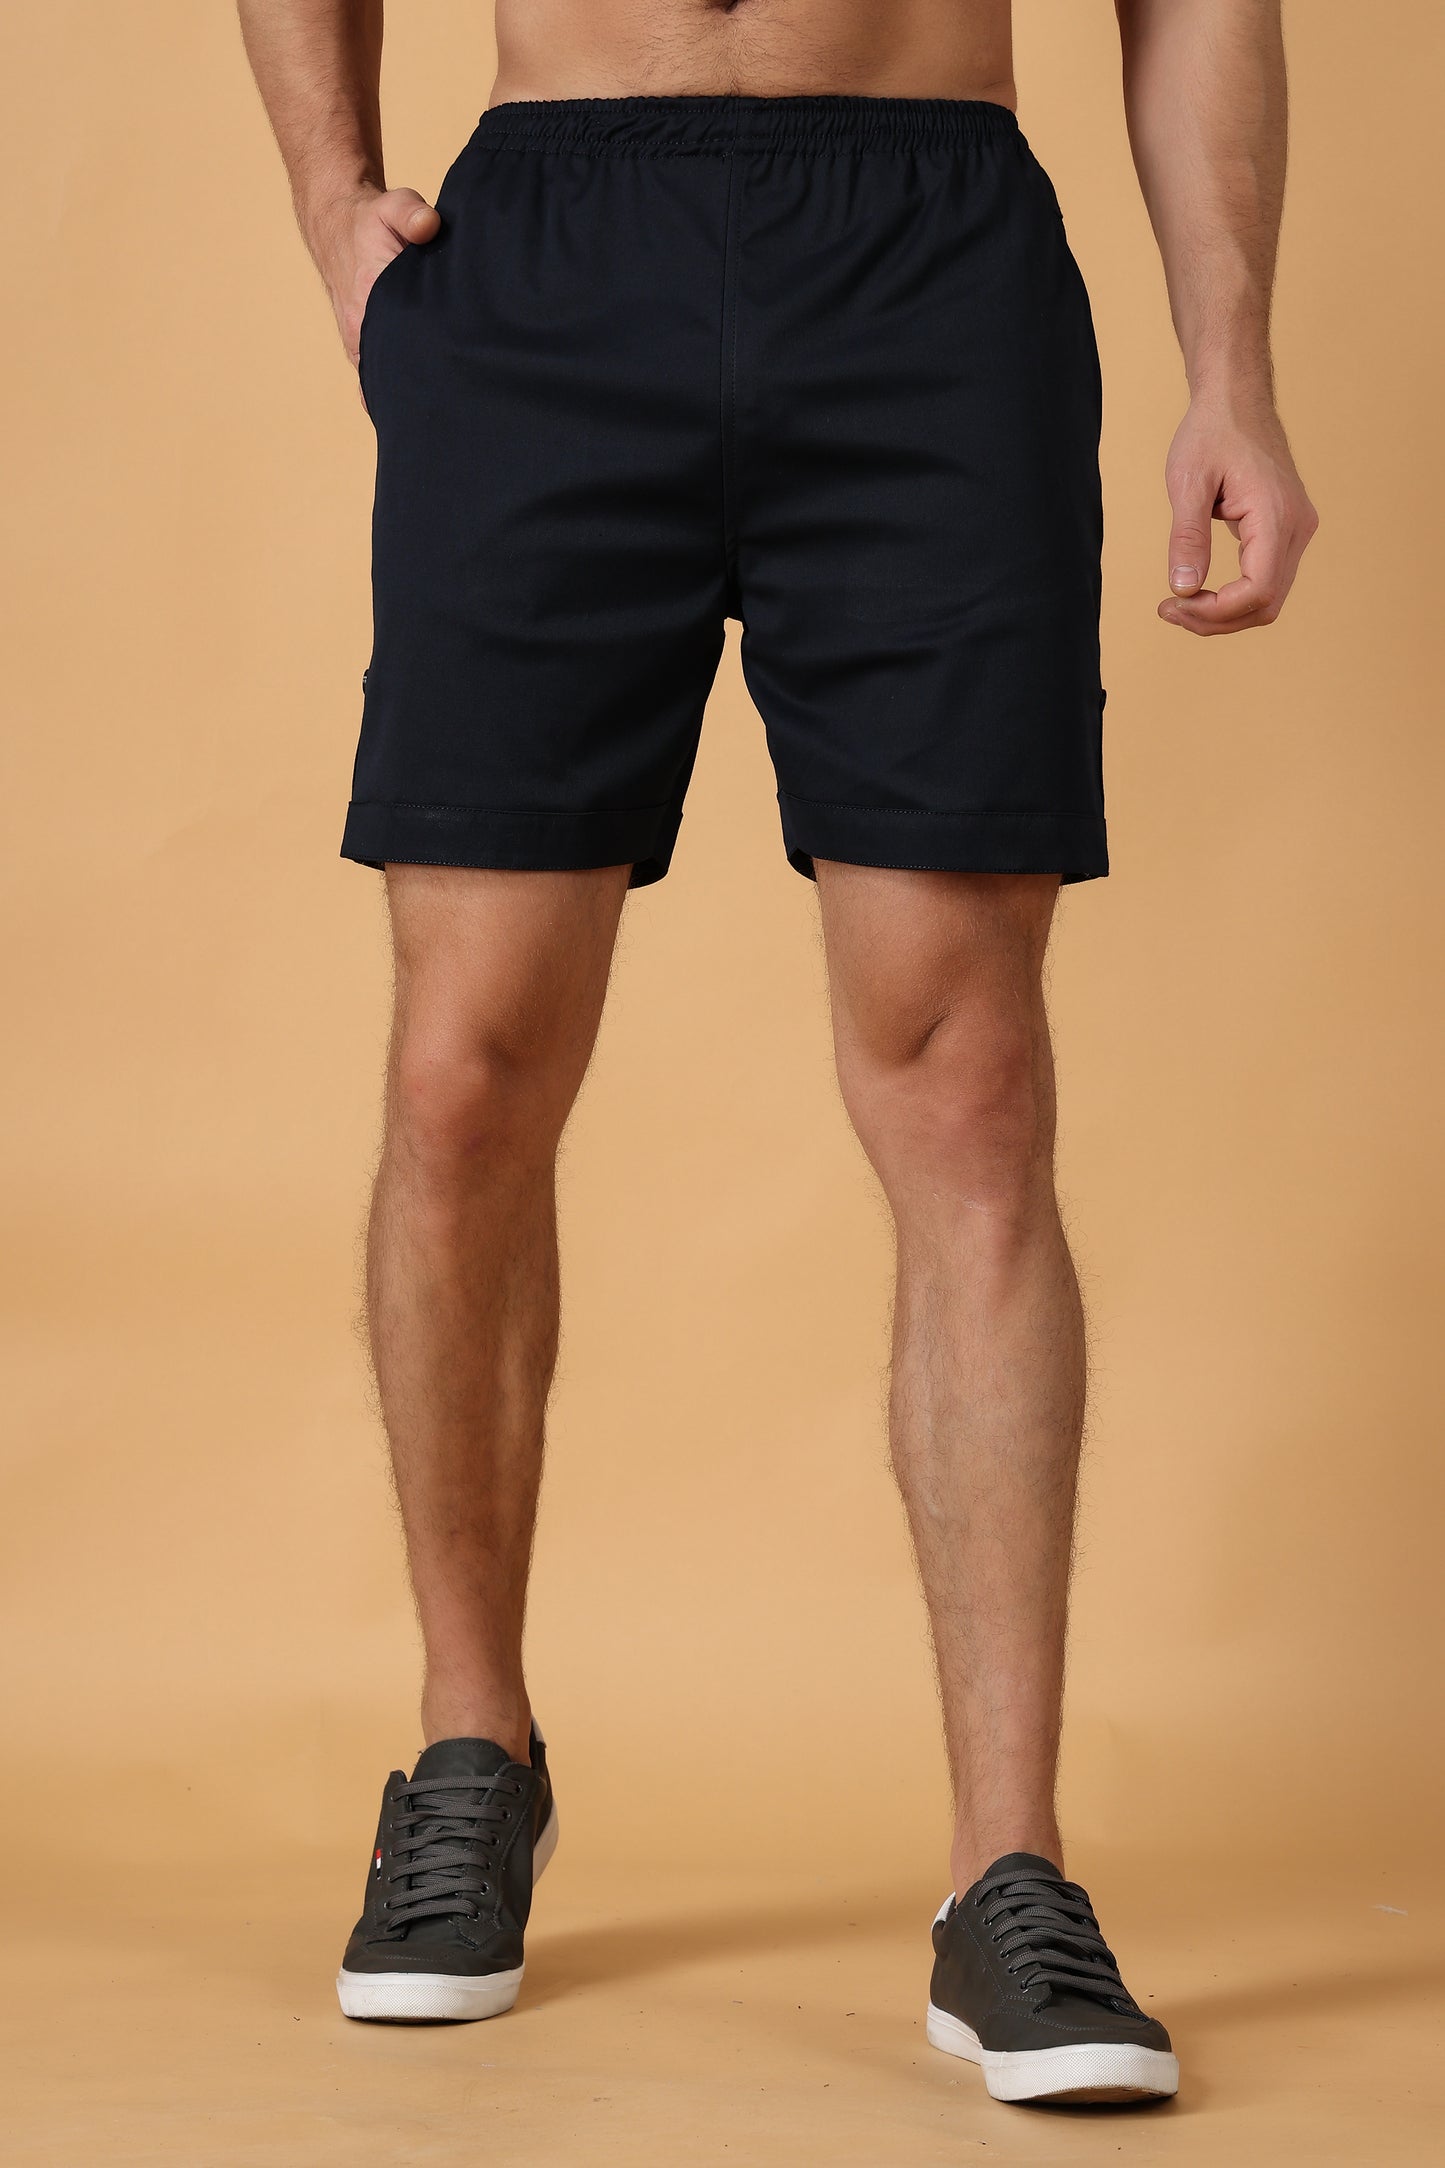 Men's Plus Size Navy Blue Cotton Lycra Shorts | Apella